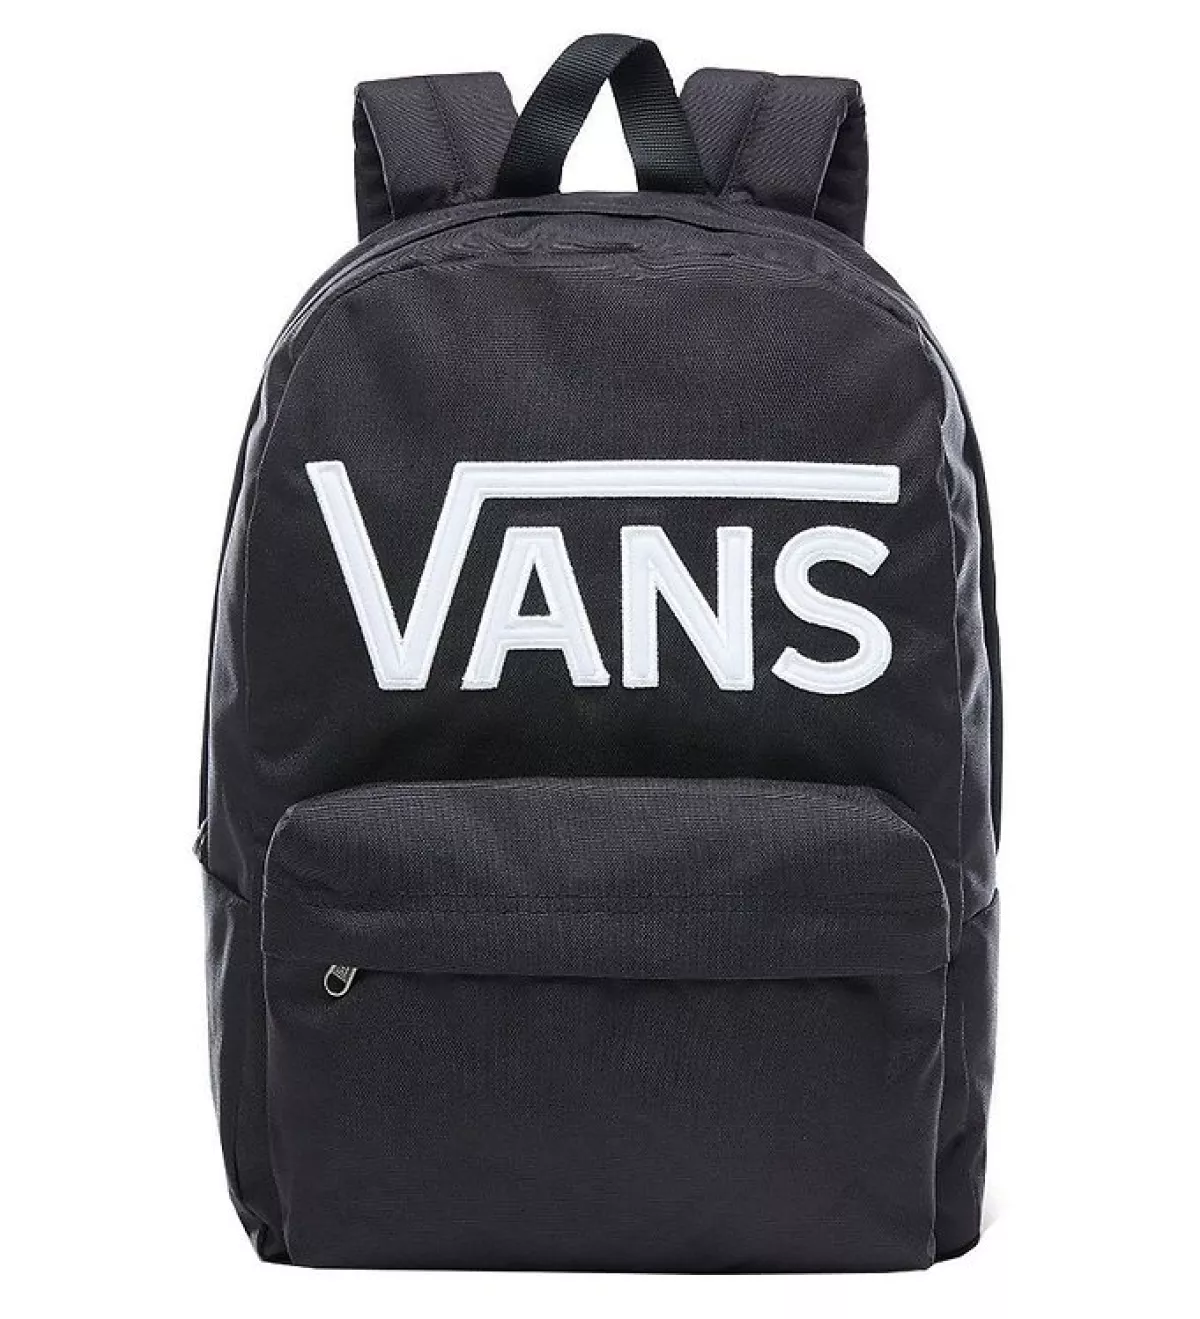 #2 - VANS By New Skool Backpack Black/White